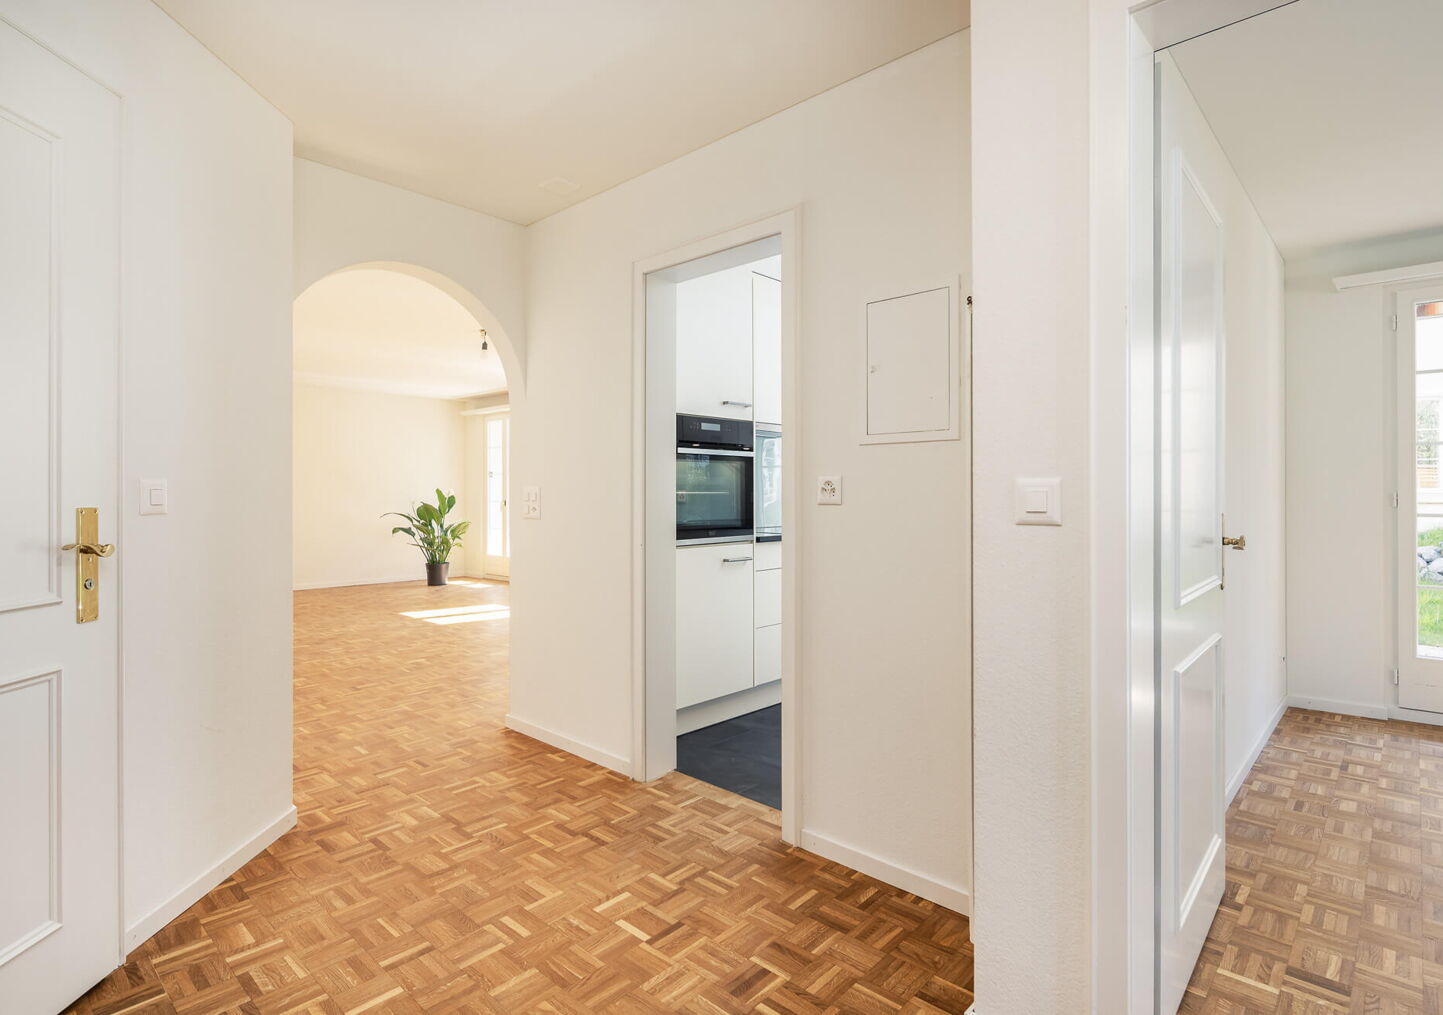 Immobilienfotografie Luzern: Wohnraumansicht von Gang in Wohnraum, Küche und Zimmer